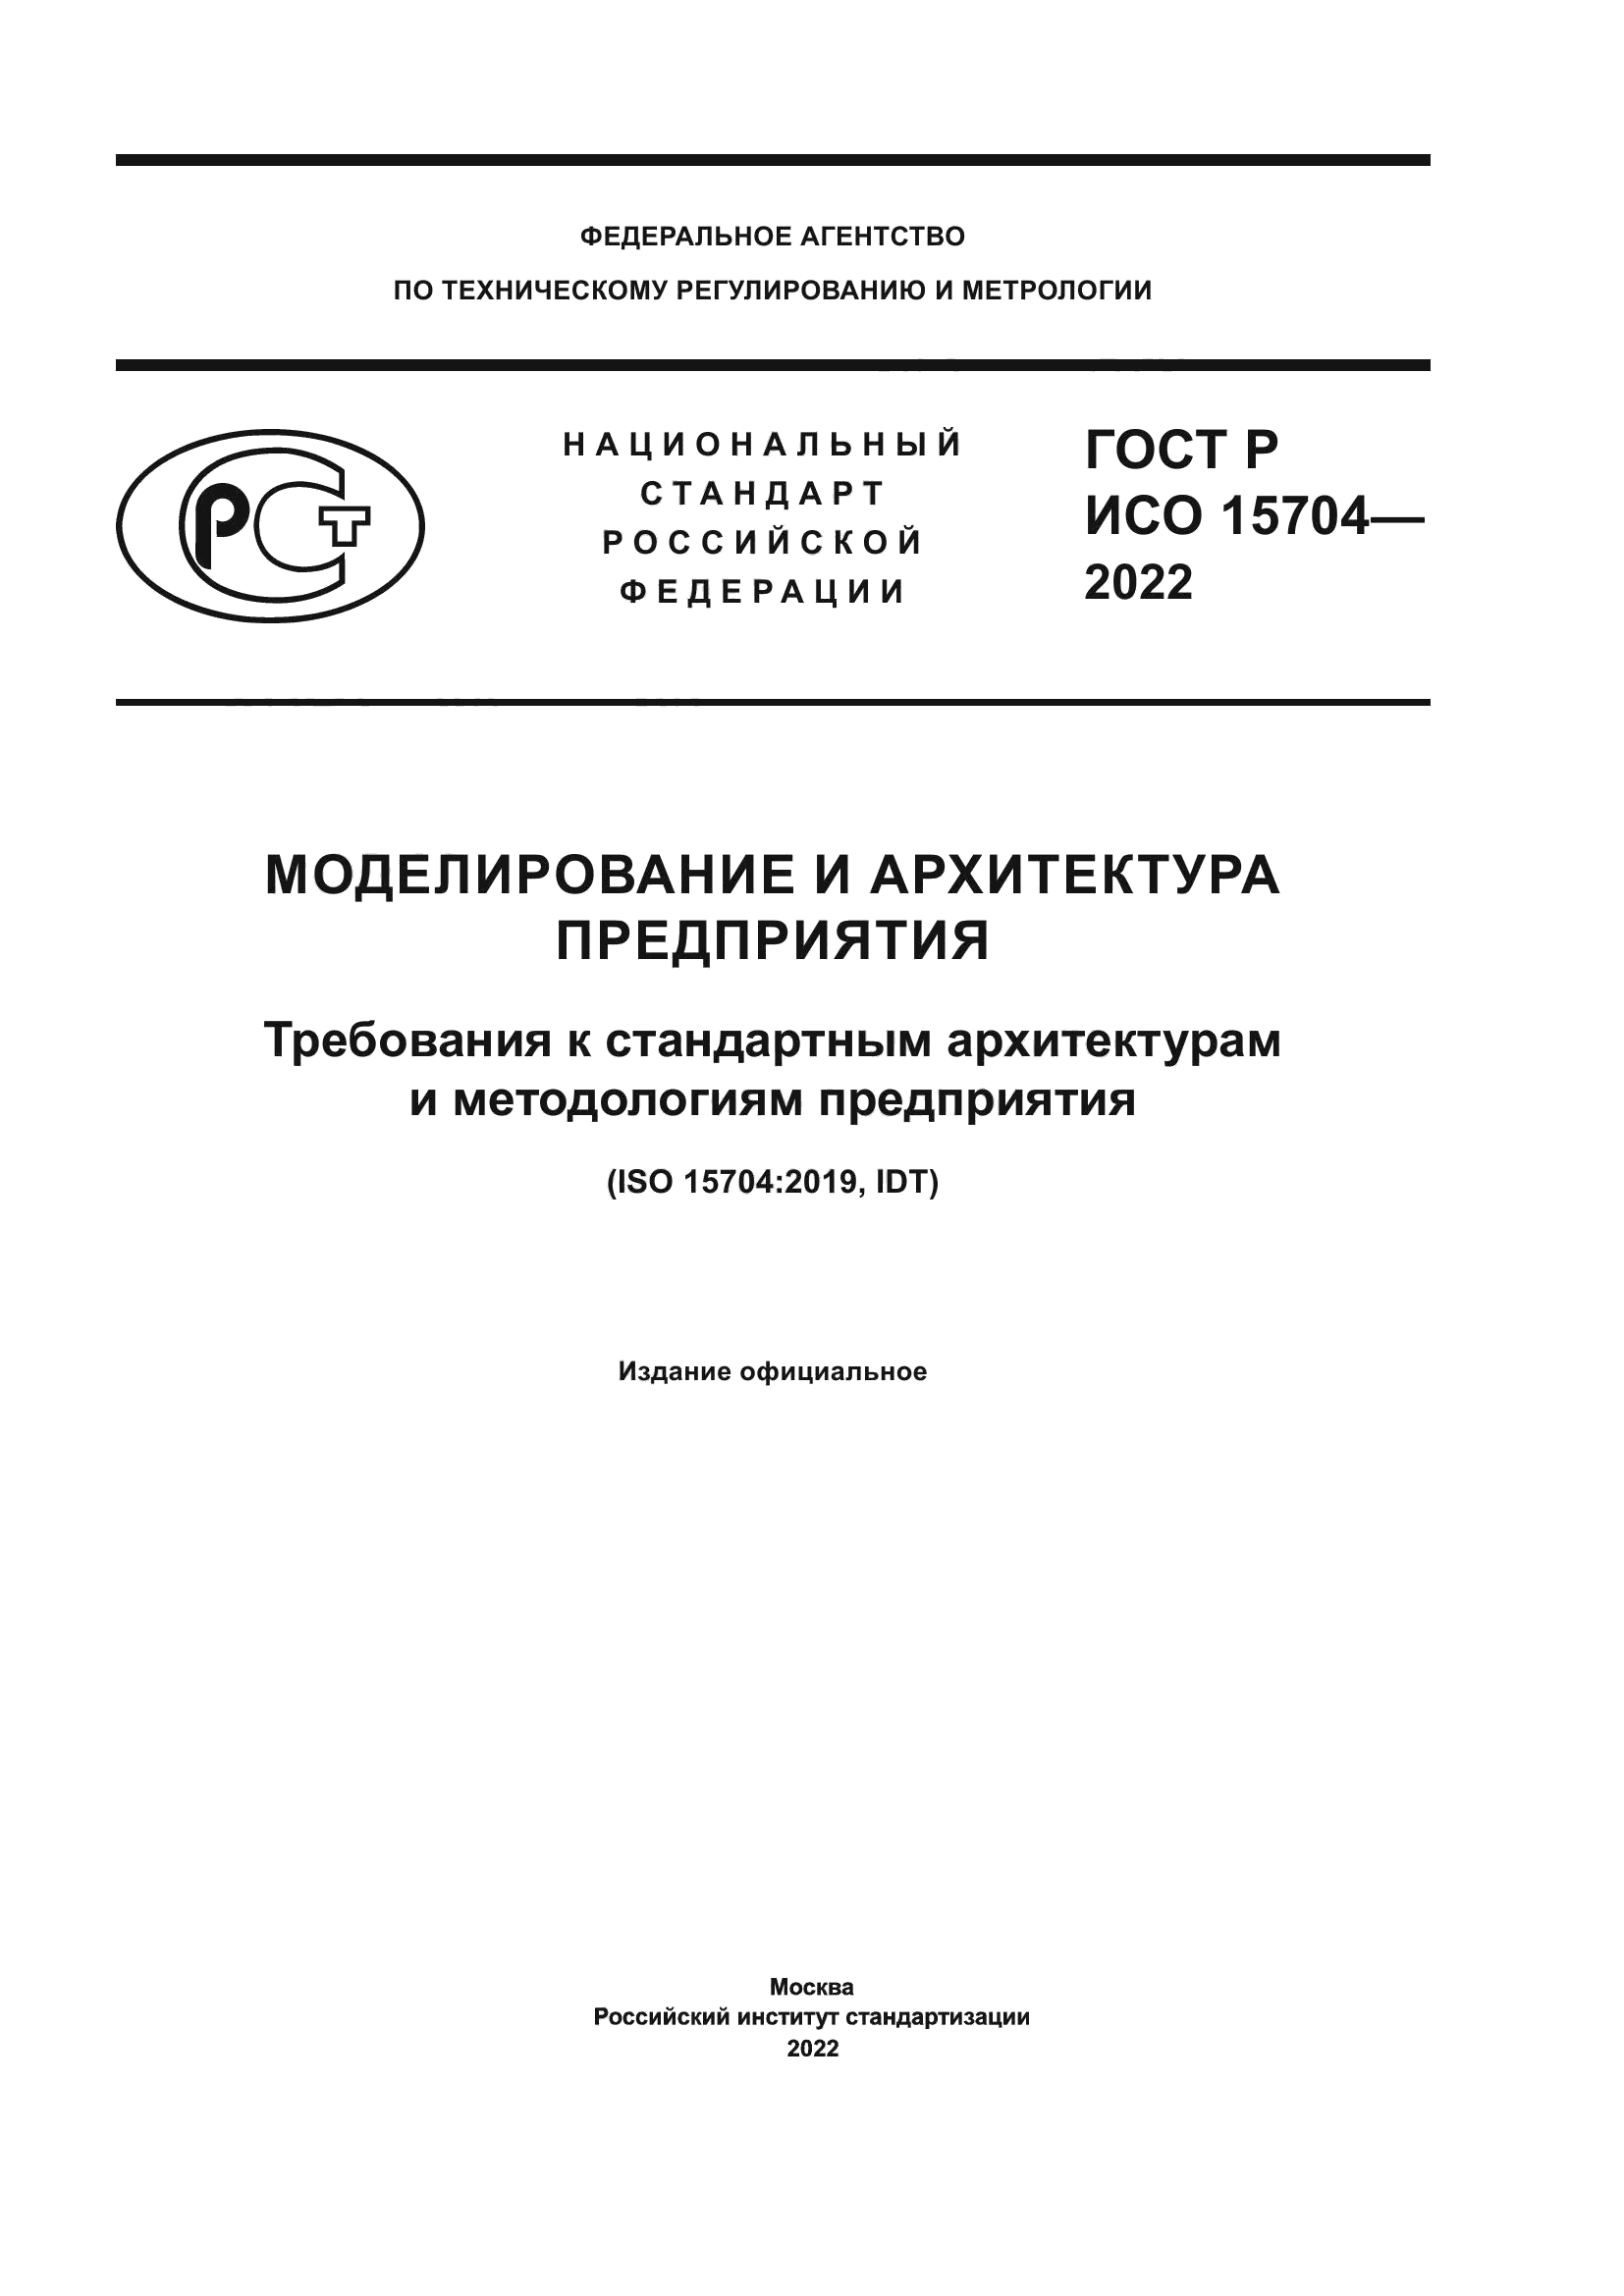 ГОСТ Р ИСО 15704-2022